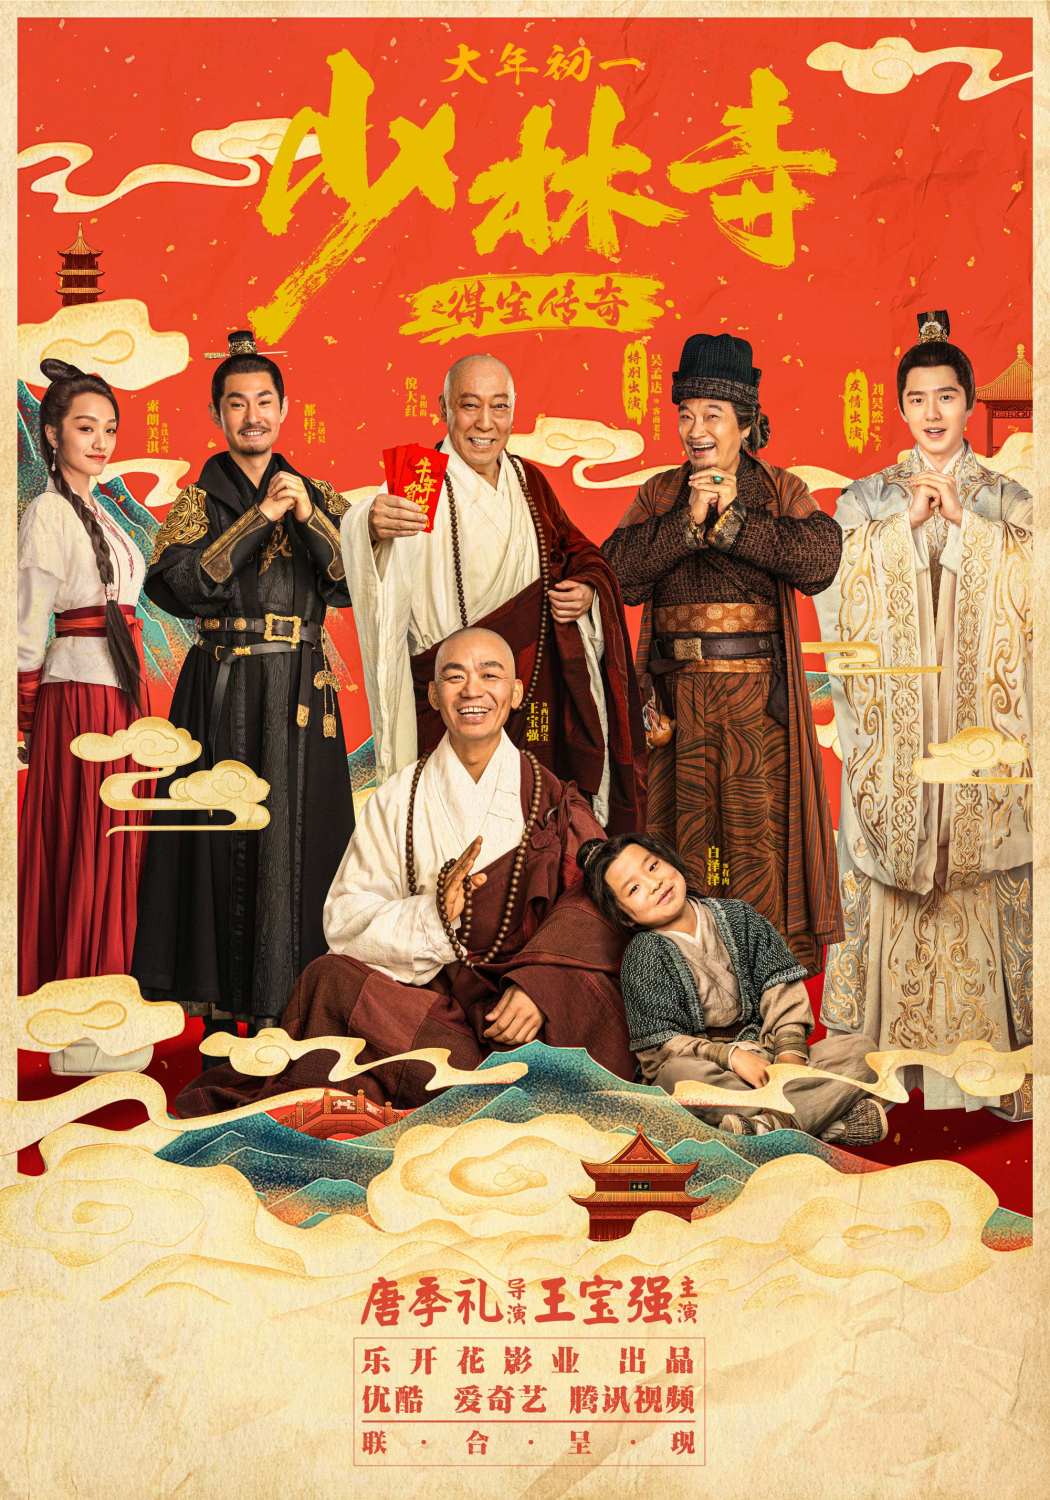 Poster Phim Truyền Kỳ Đắc Bảo Ở Thiếu Lâm Tự (Shao Lin Shi Zhi De Bao Chuan Qi)